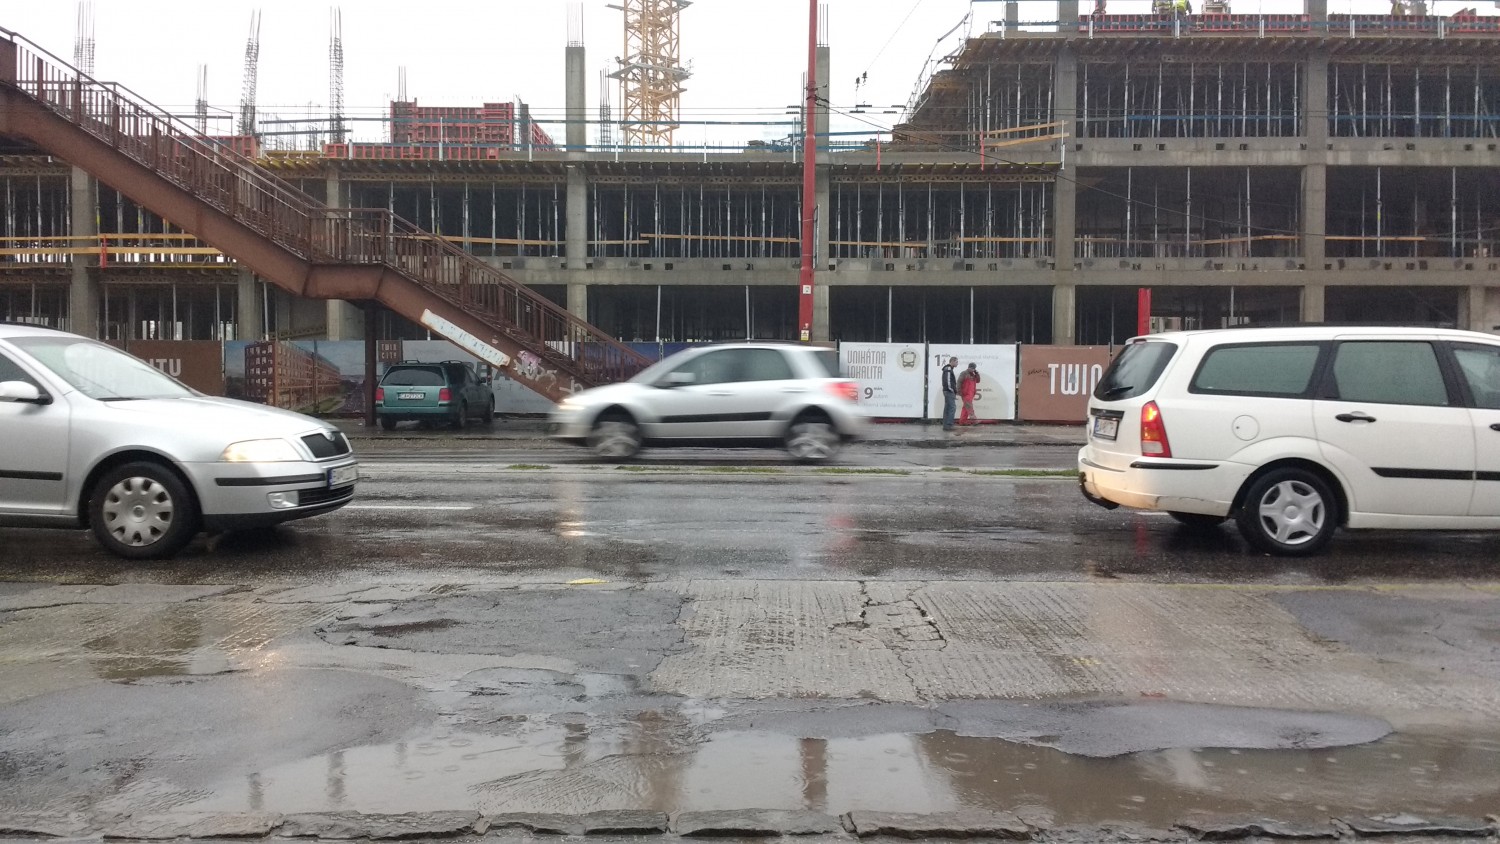 Rainy day in Bratislava